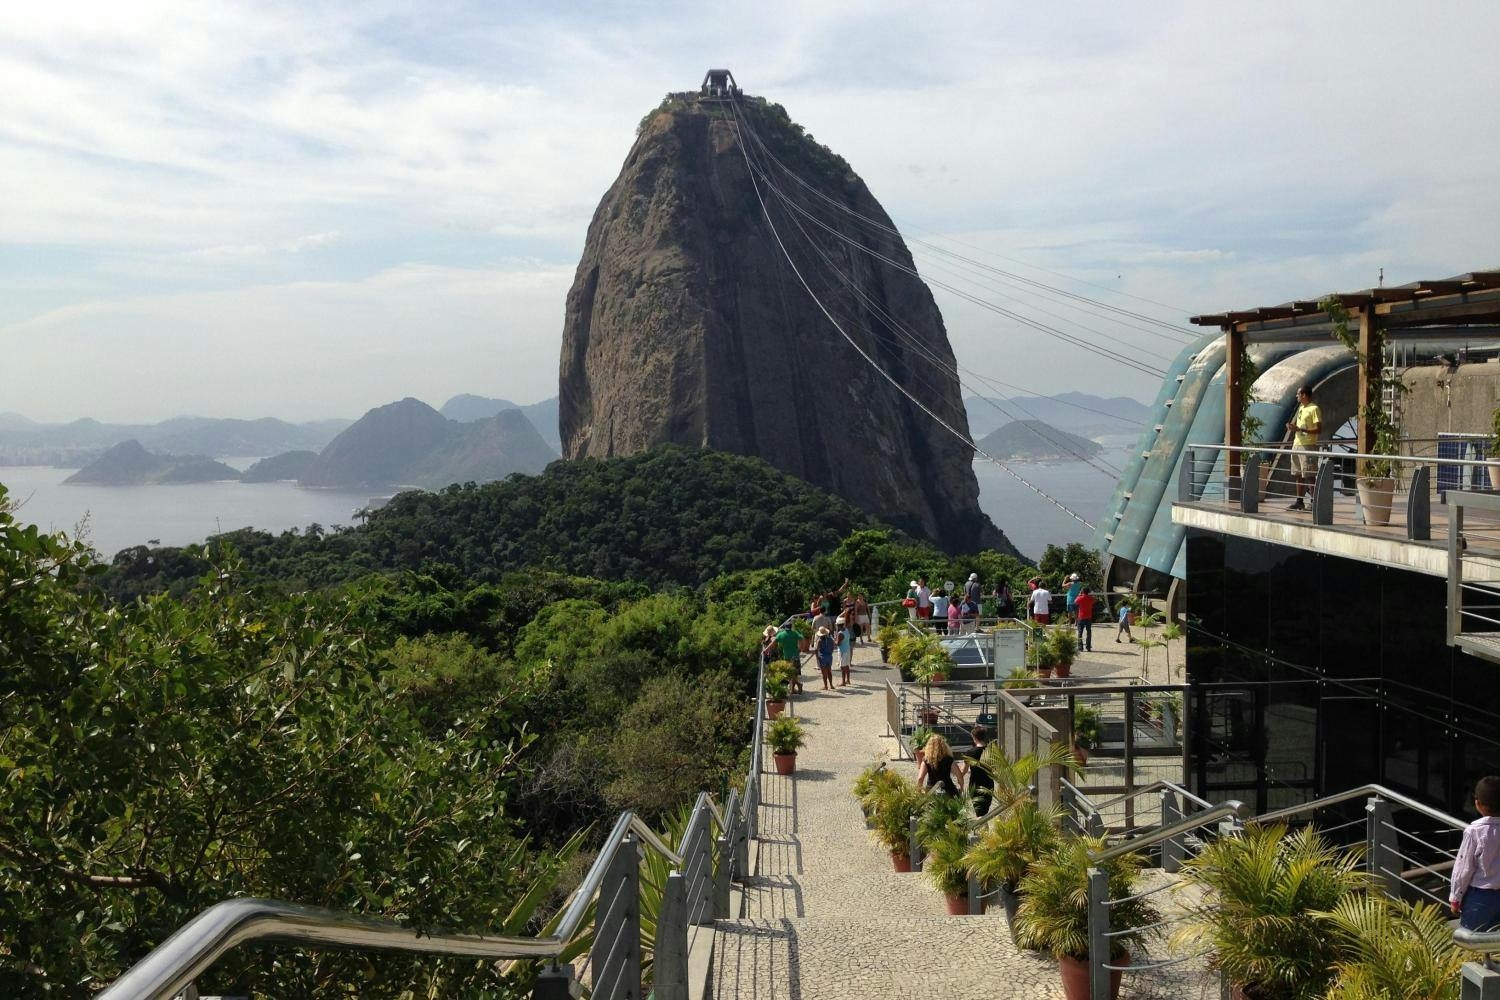 Principais pontos turísticos do Rio em um dia com visita guiada com almoço